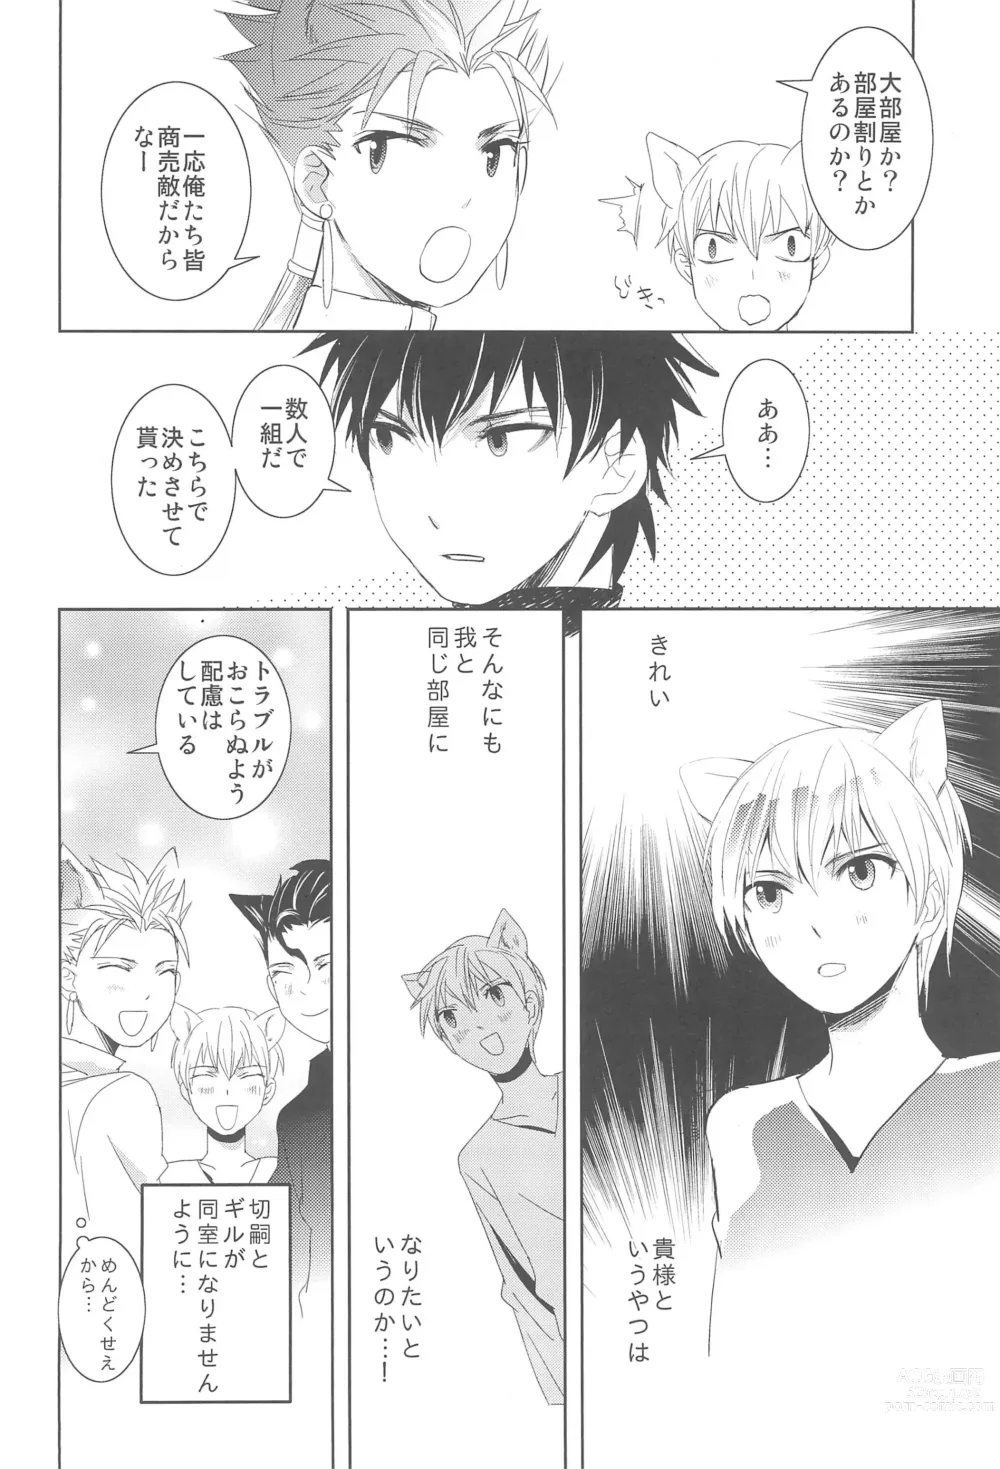 Page 8 of doujinshi Omise no Neko 3.5